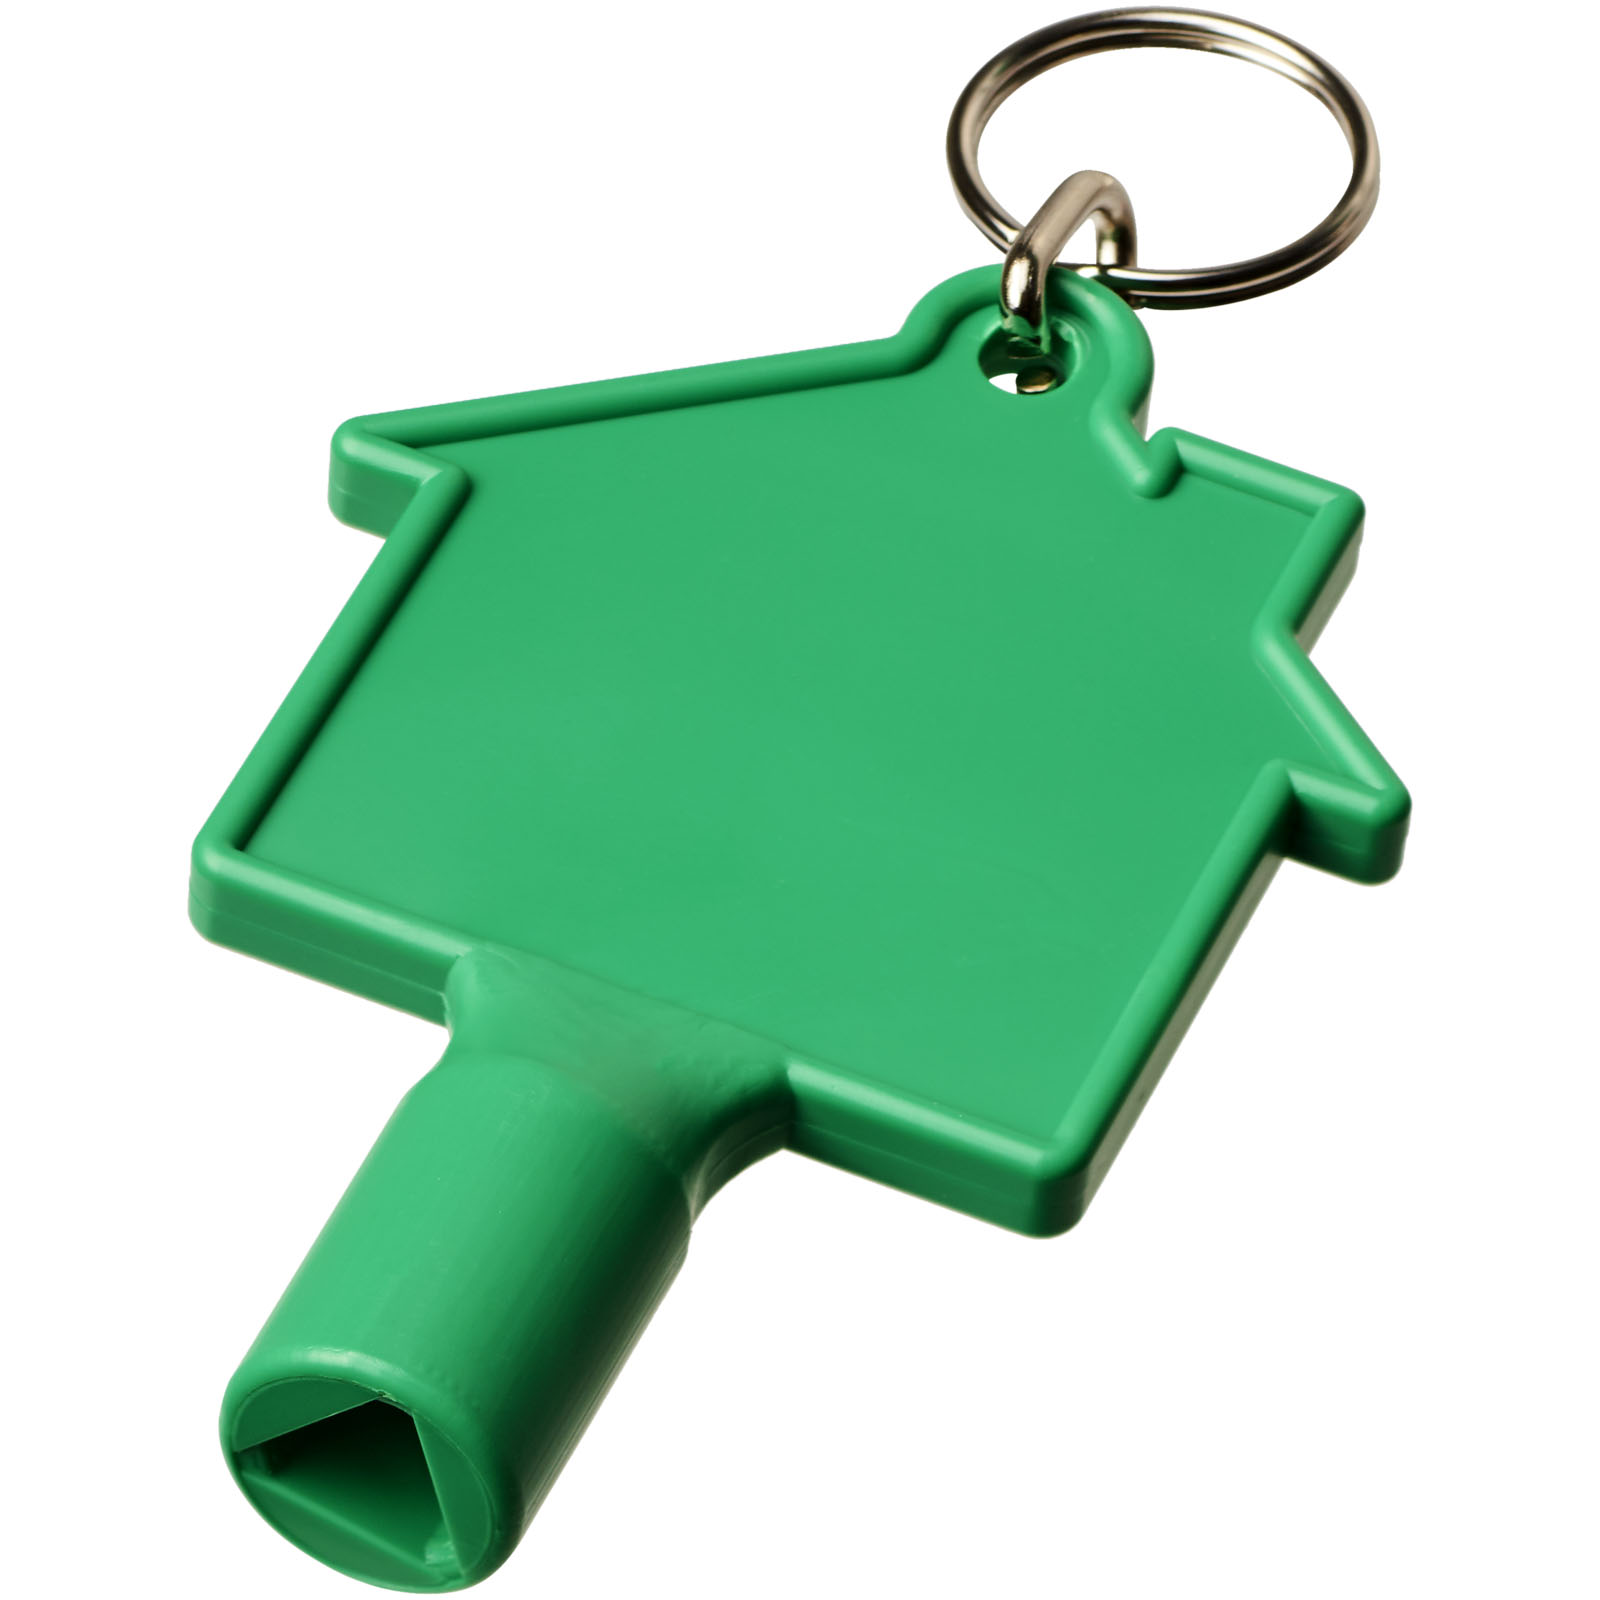 Porte-clés - Clé utilitaire Maximilian en forme de maison avec porte-clés 